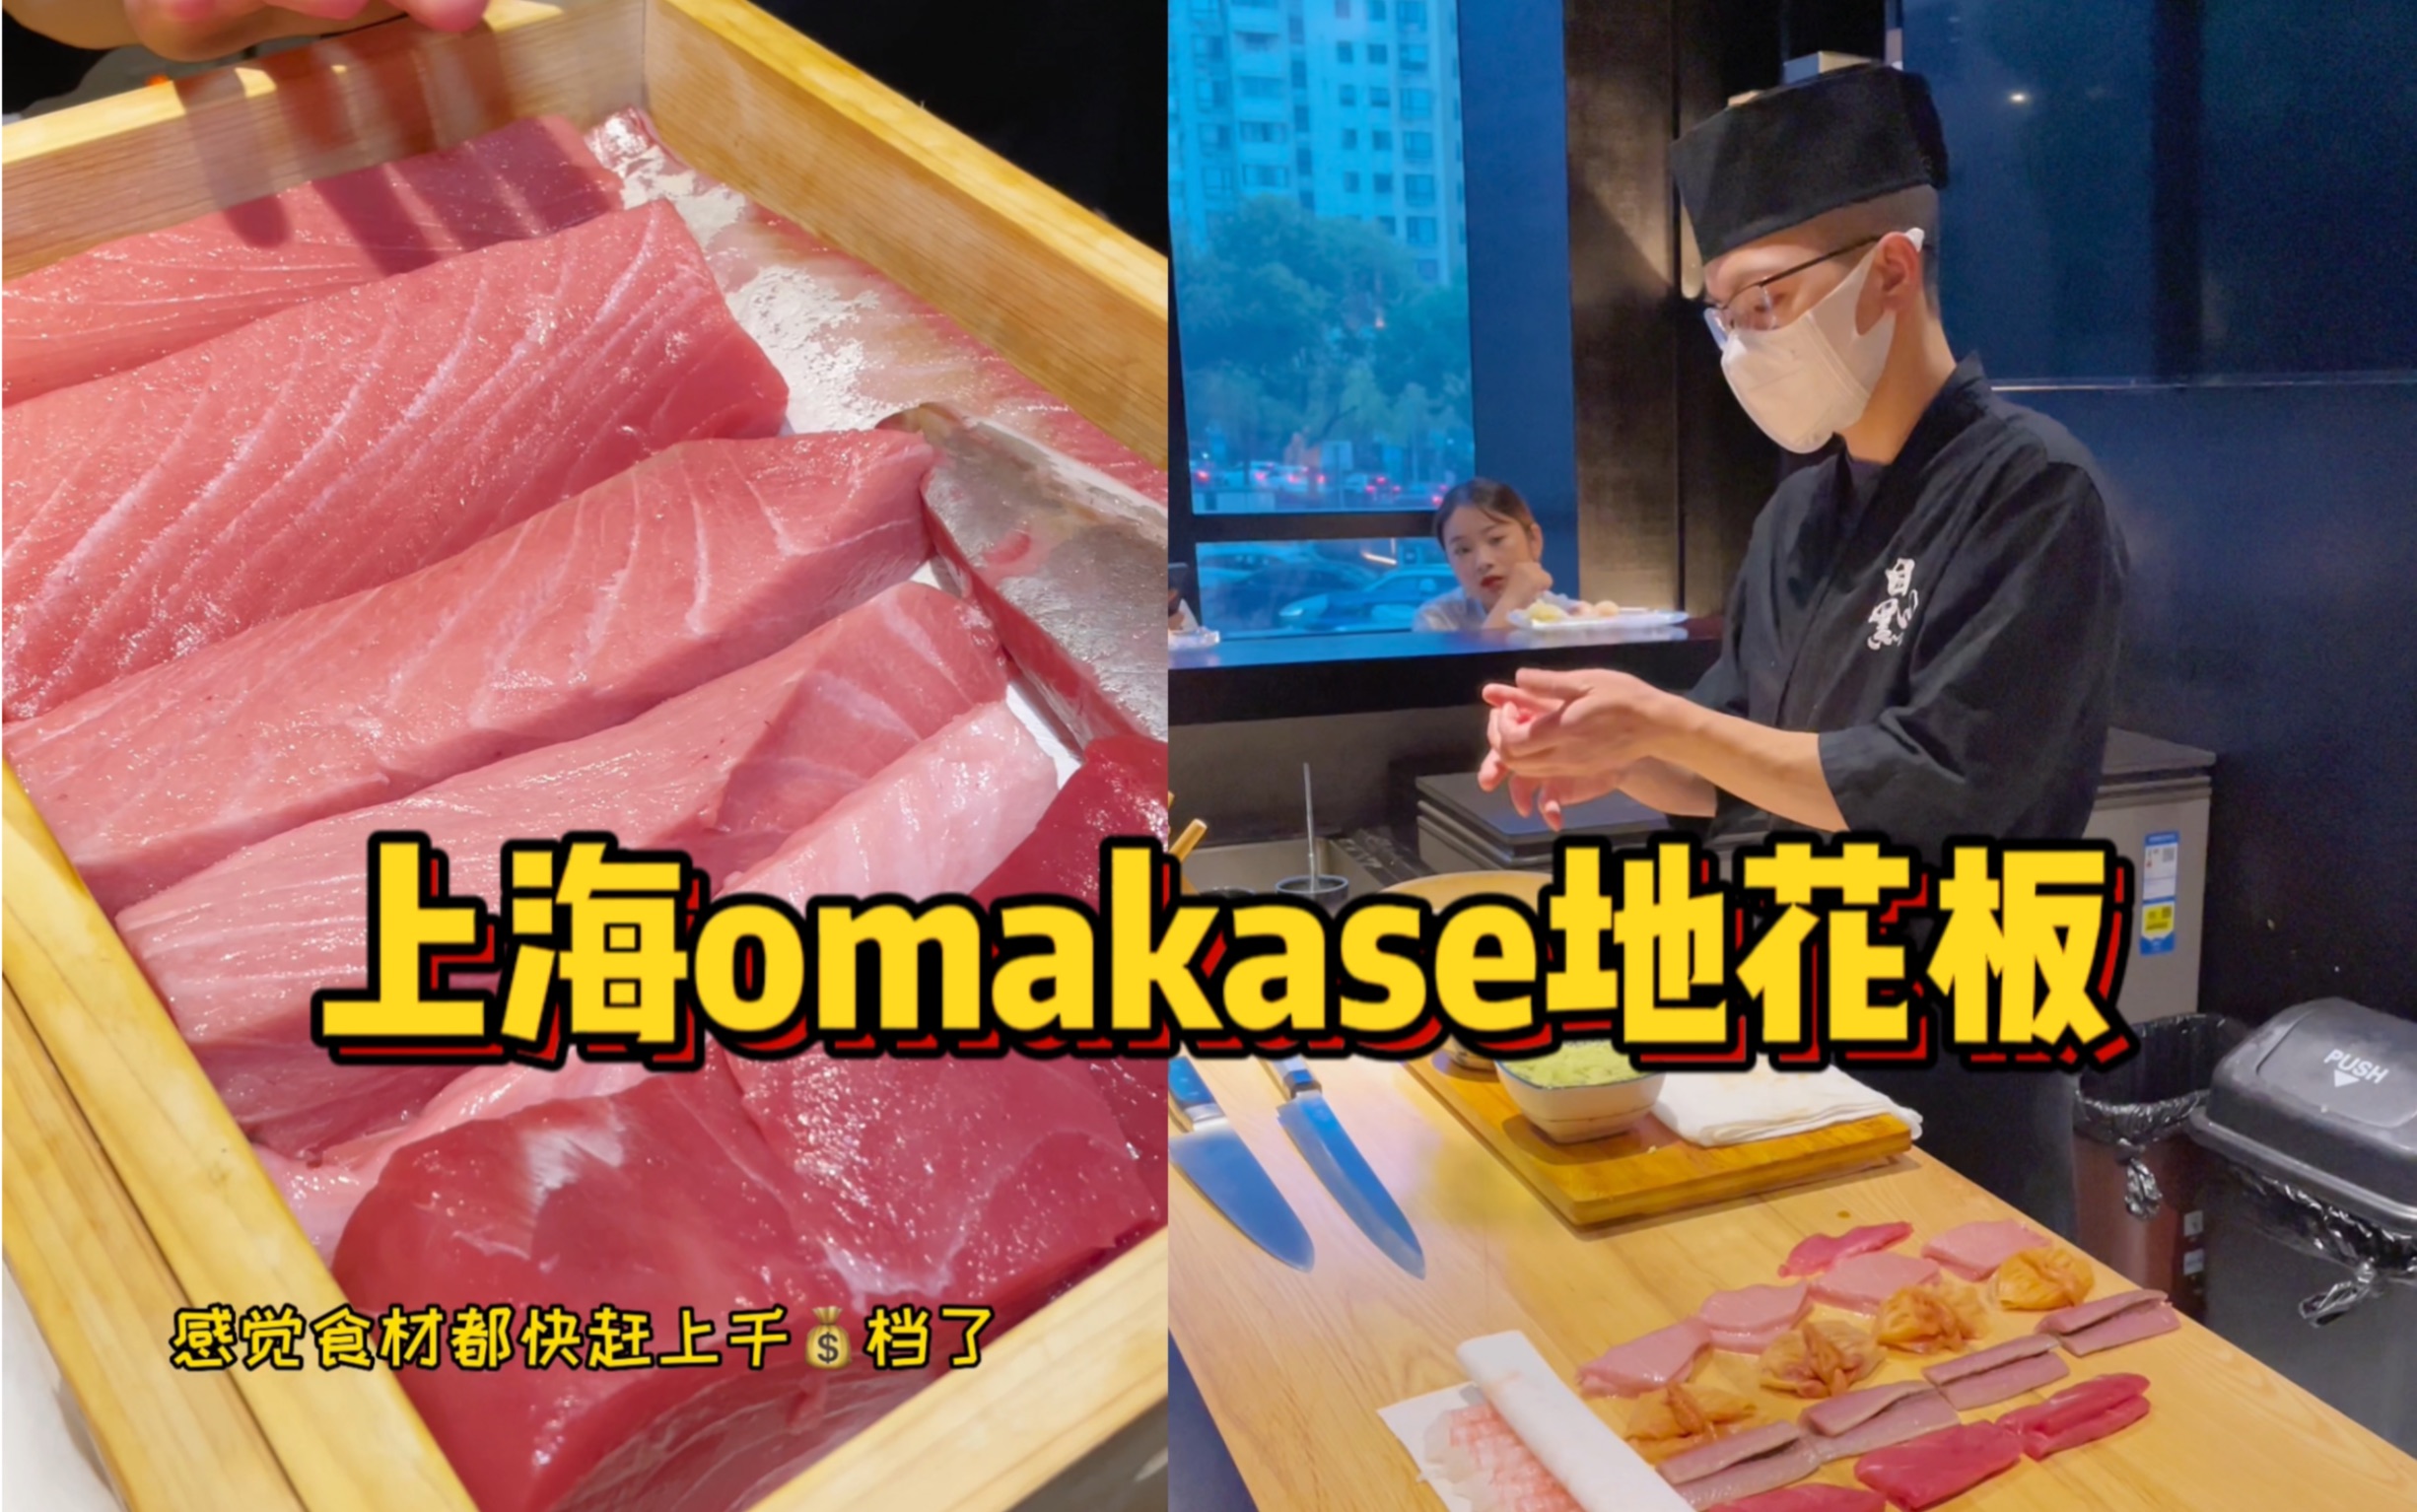 人人都吃得起的omakase！18道菜愣是吃撑了…还吃到了鳕鱼白子？又长见识了…